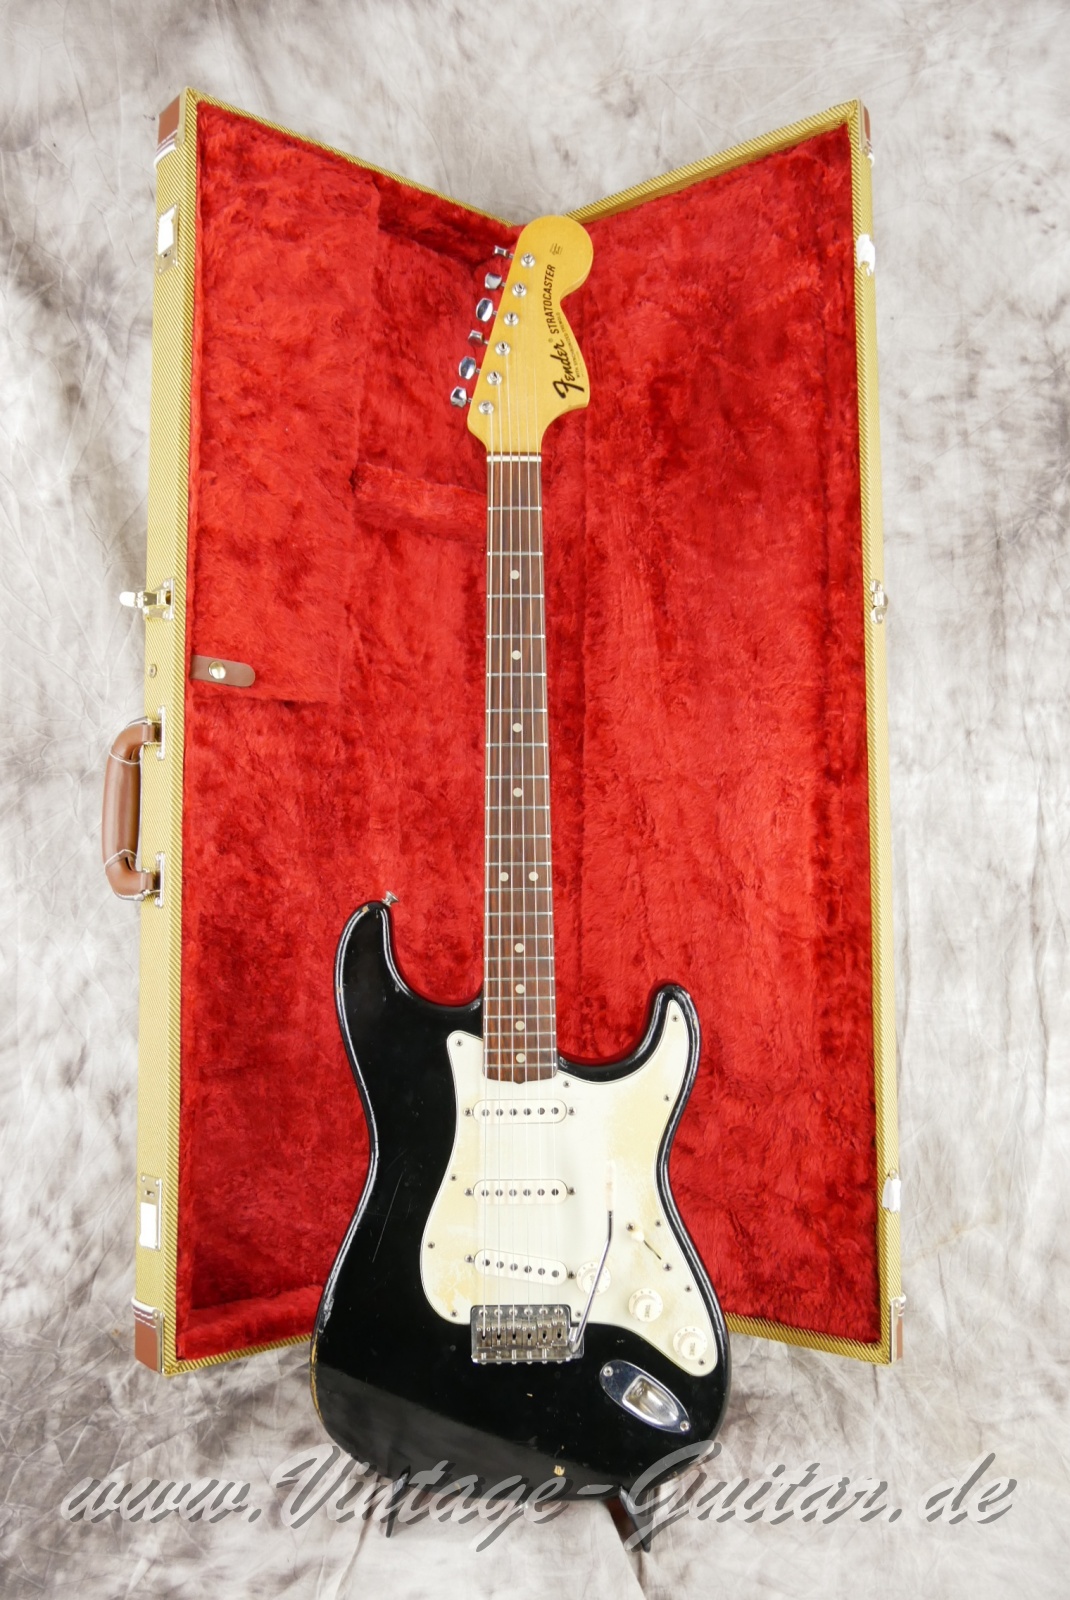 Fender-Stratocaster-1964-body-with-1969-neck-black-038.jpg